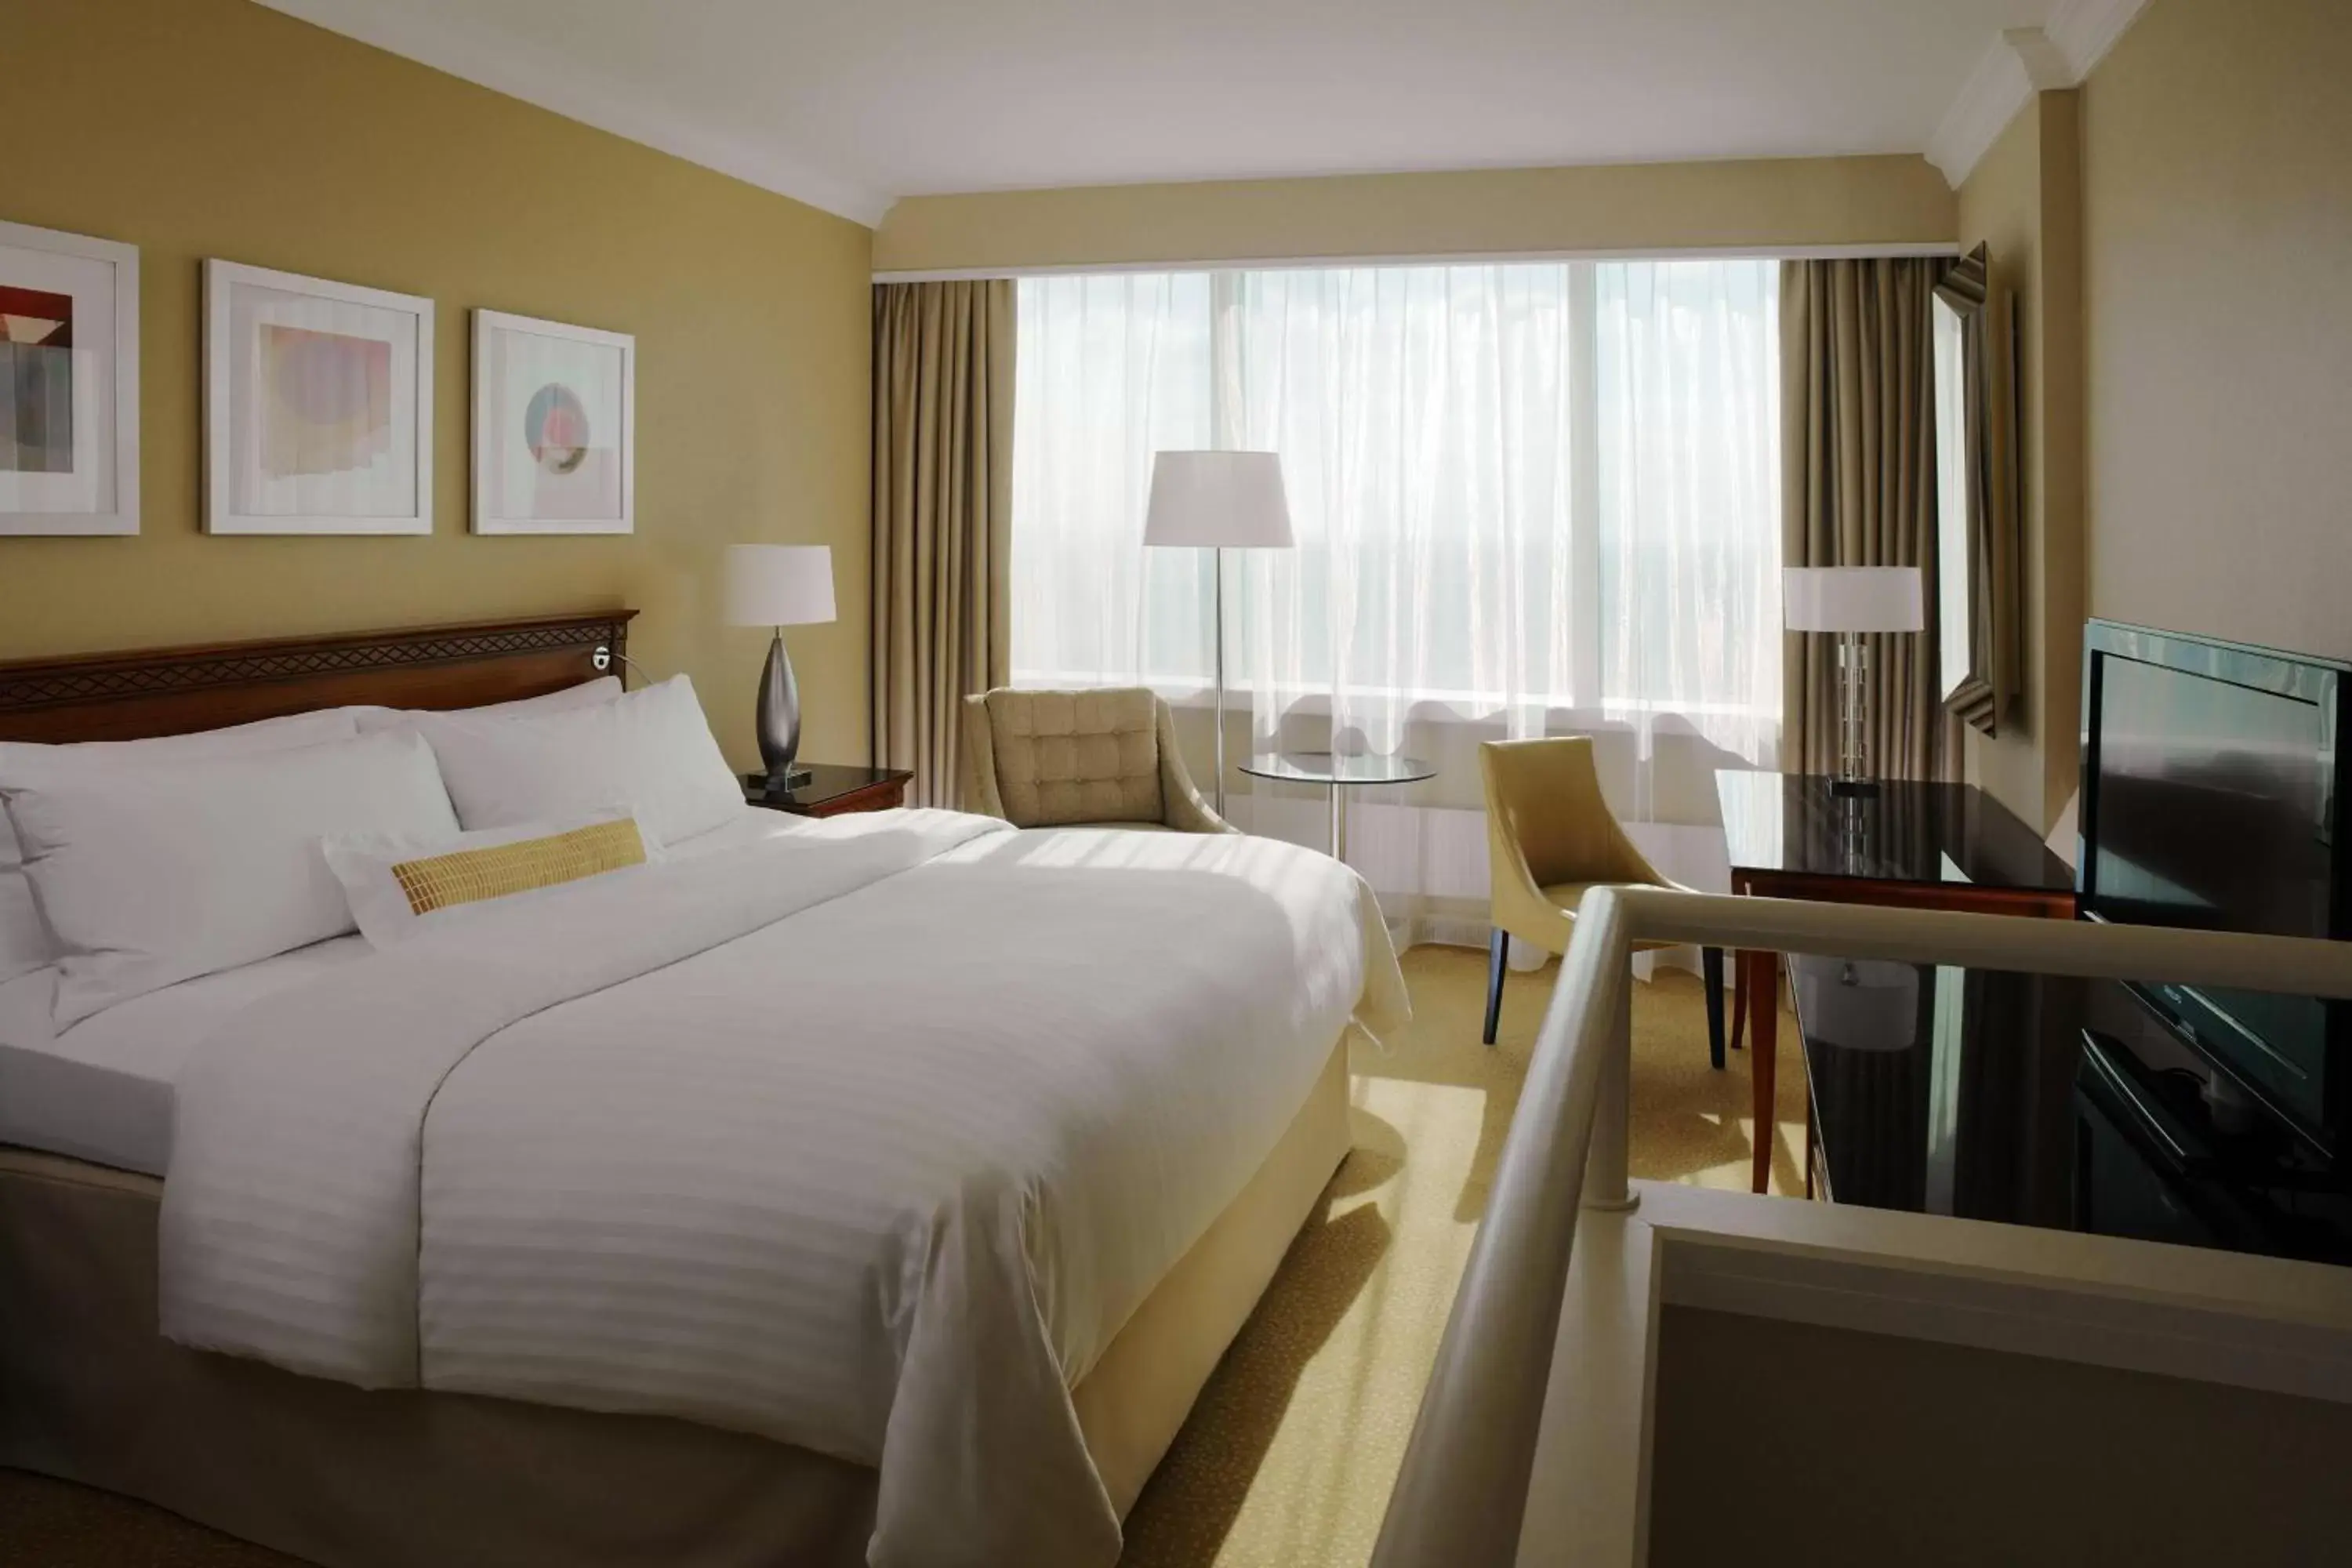 Bedroom in Warsaw Marriott Hotel